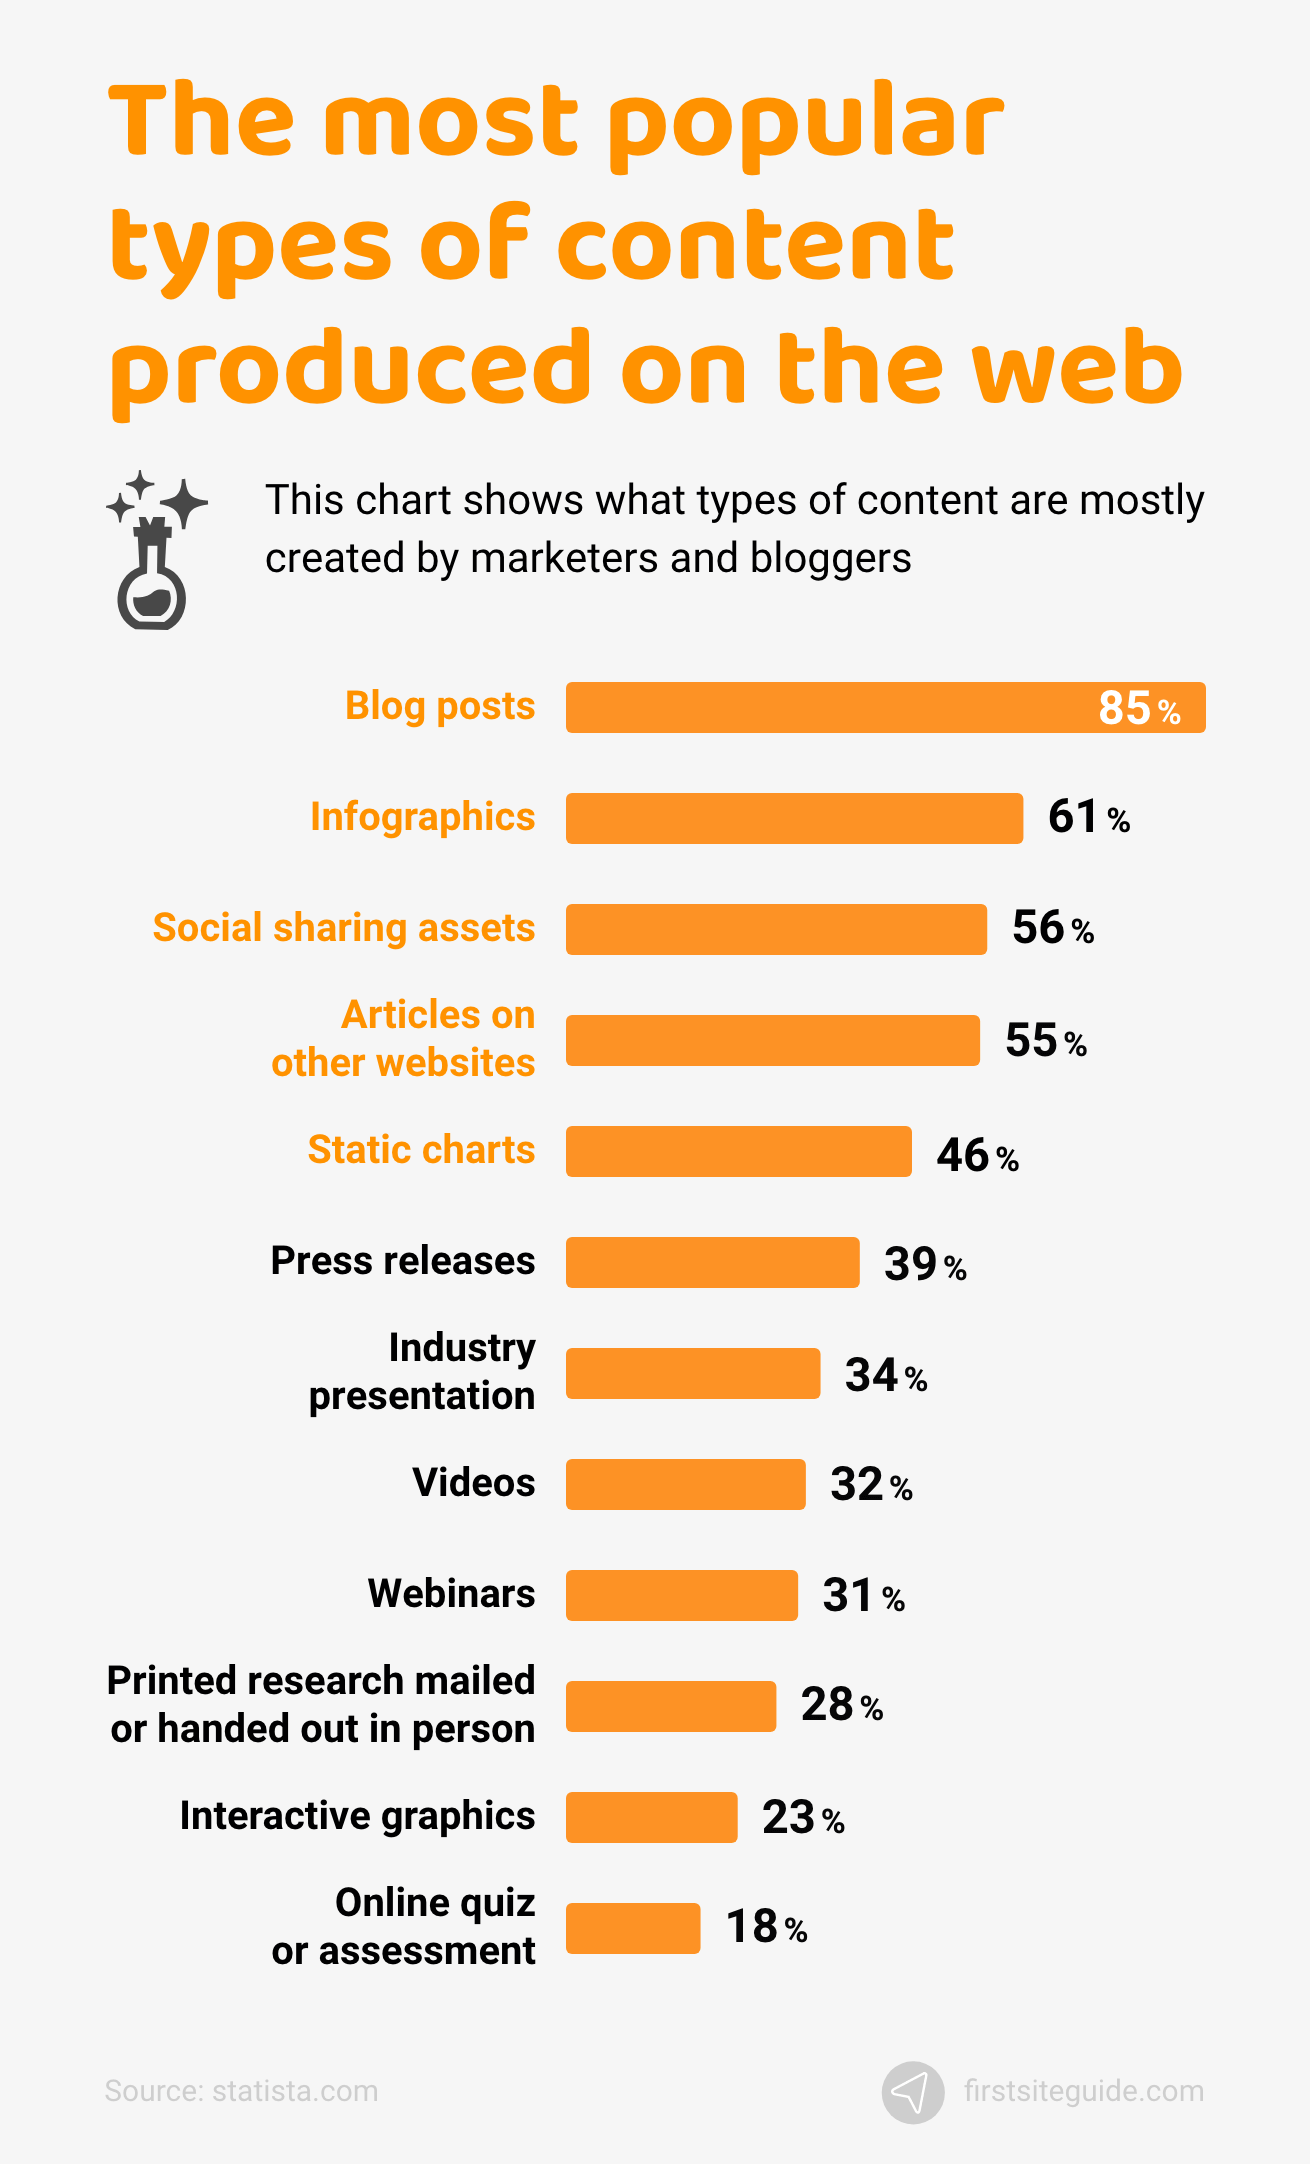 Los tipos de contenido más populares producidos en la web